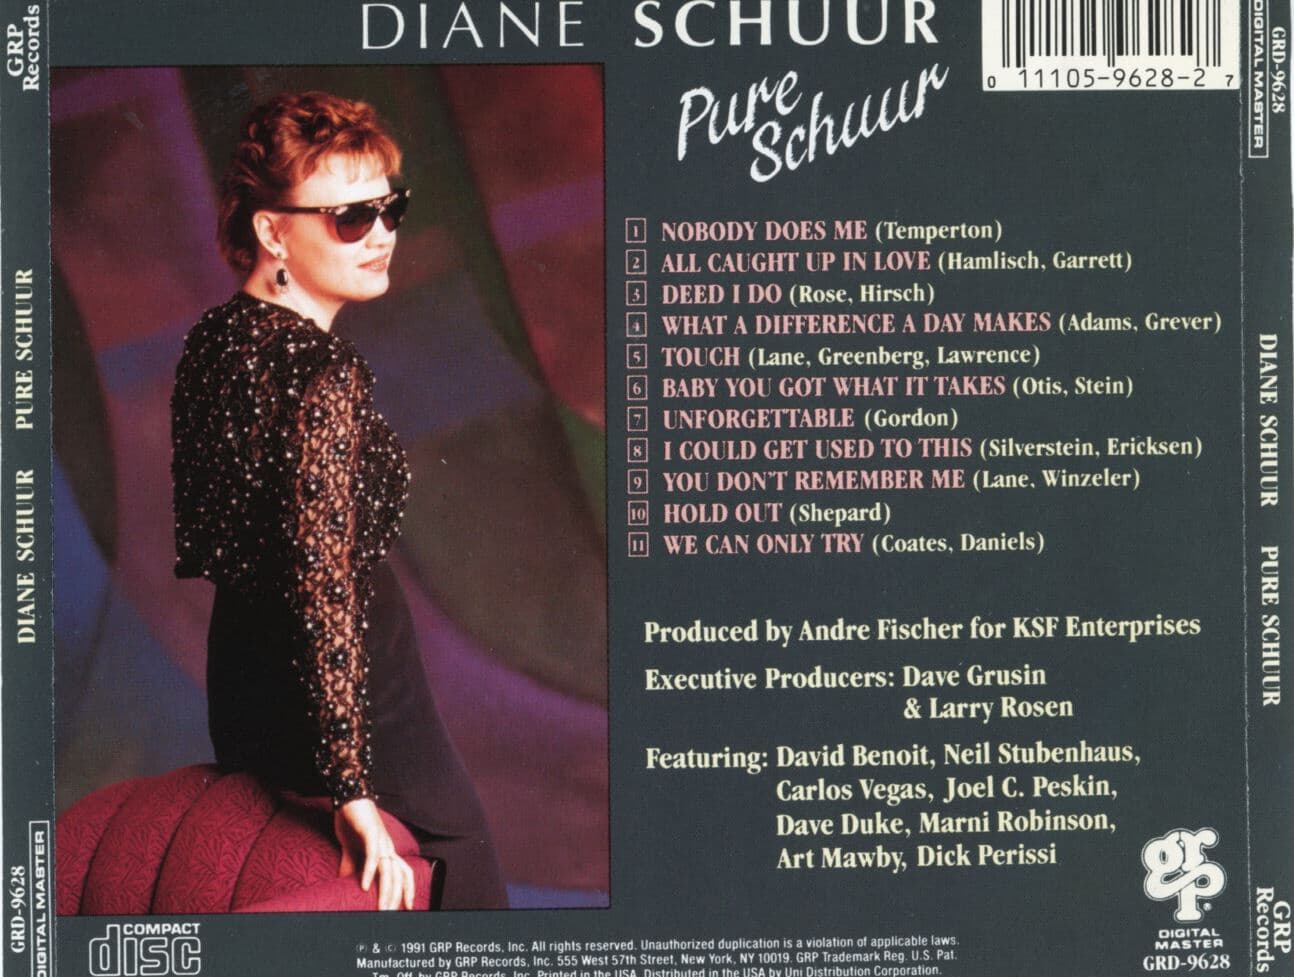 다이안 슈어 - Diane Schuur - Pure Schuur [U.S발매]